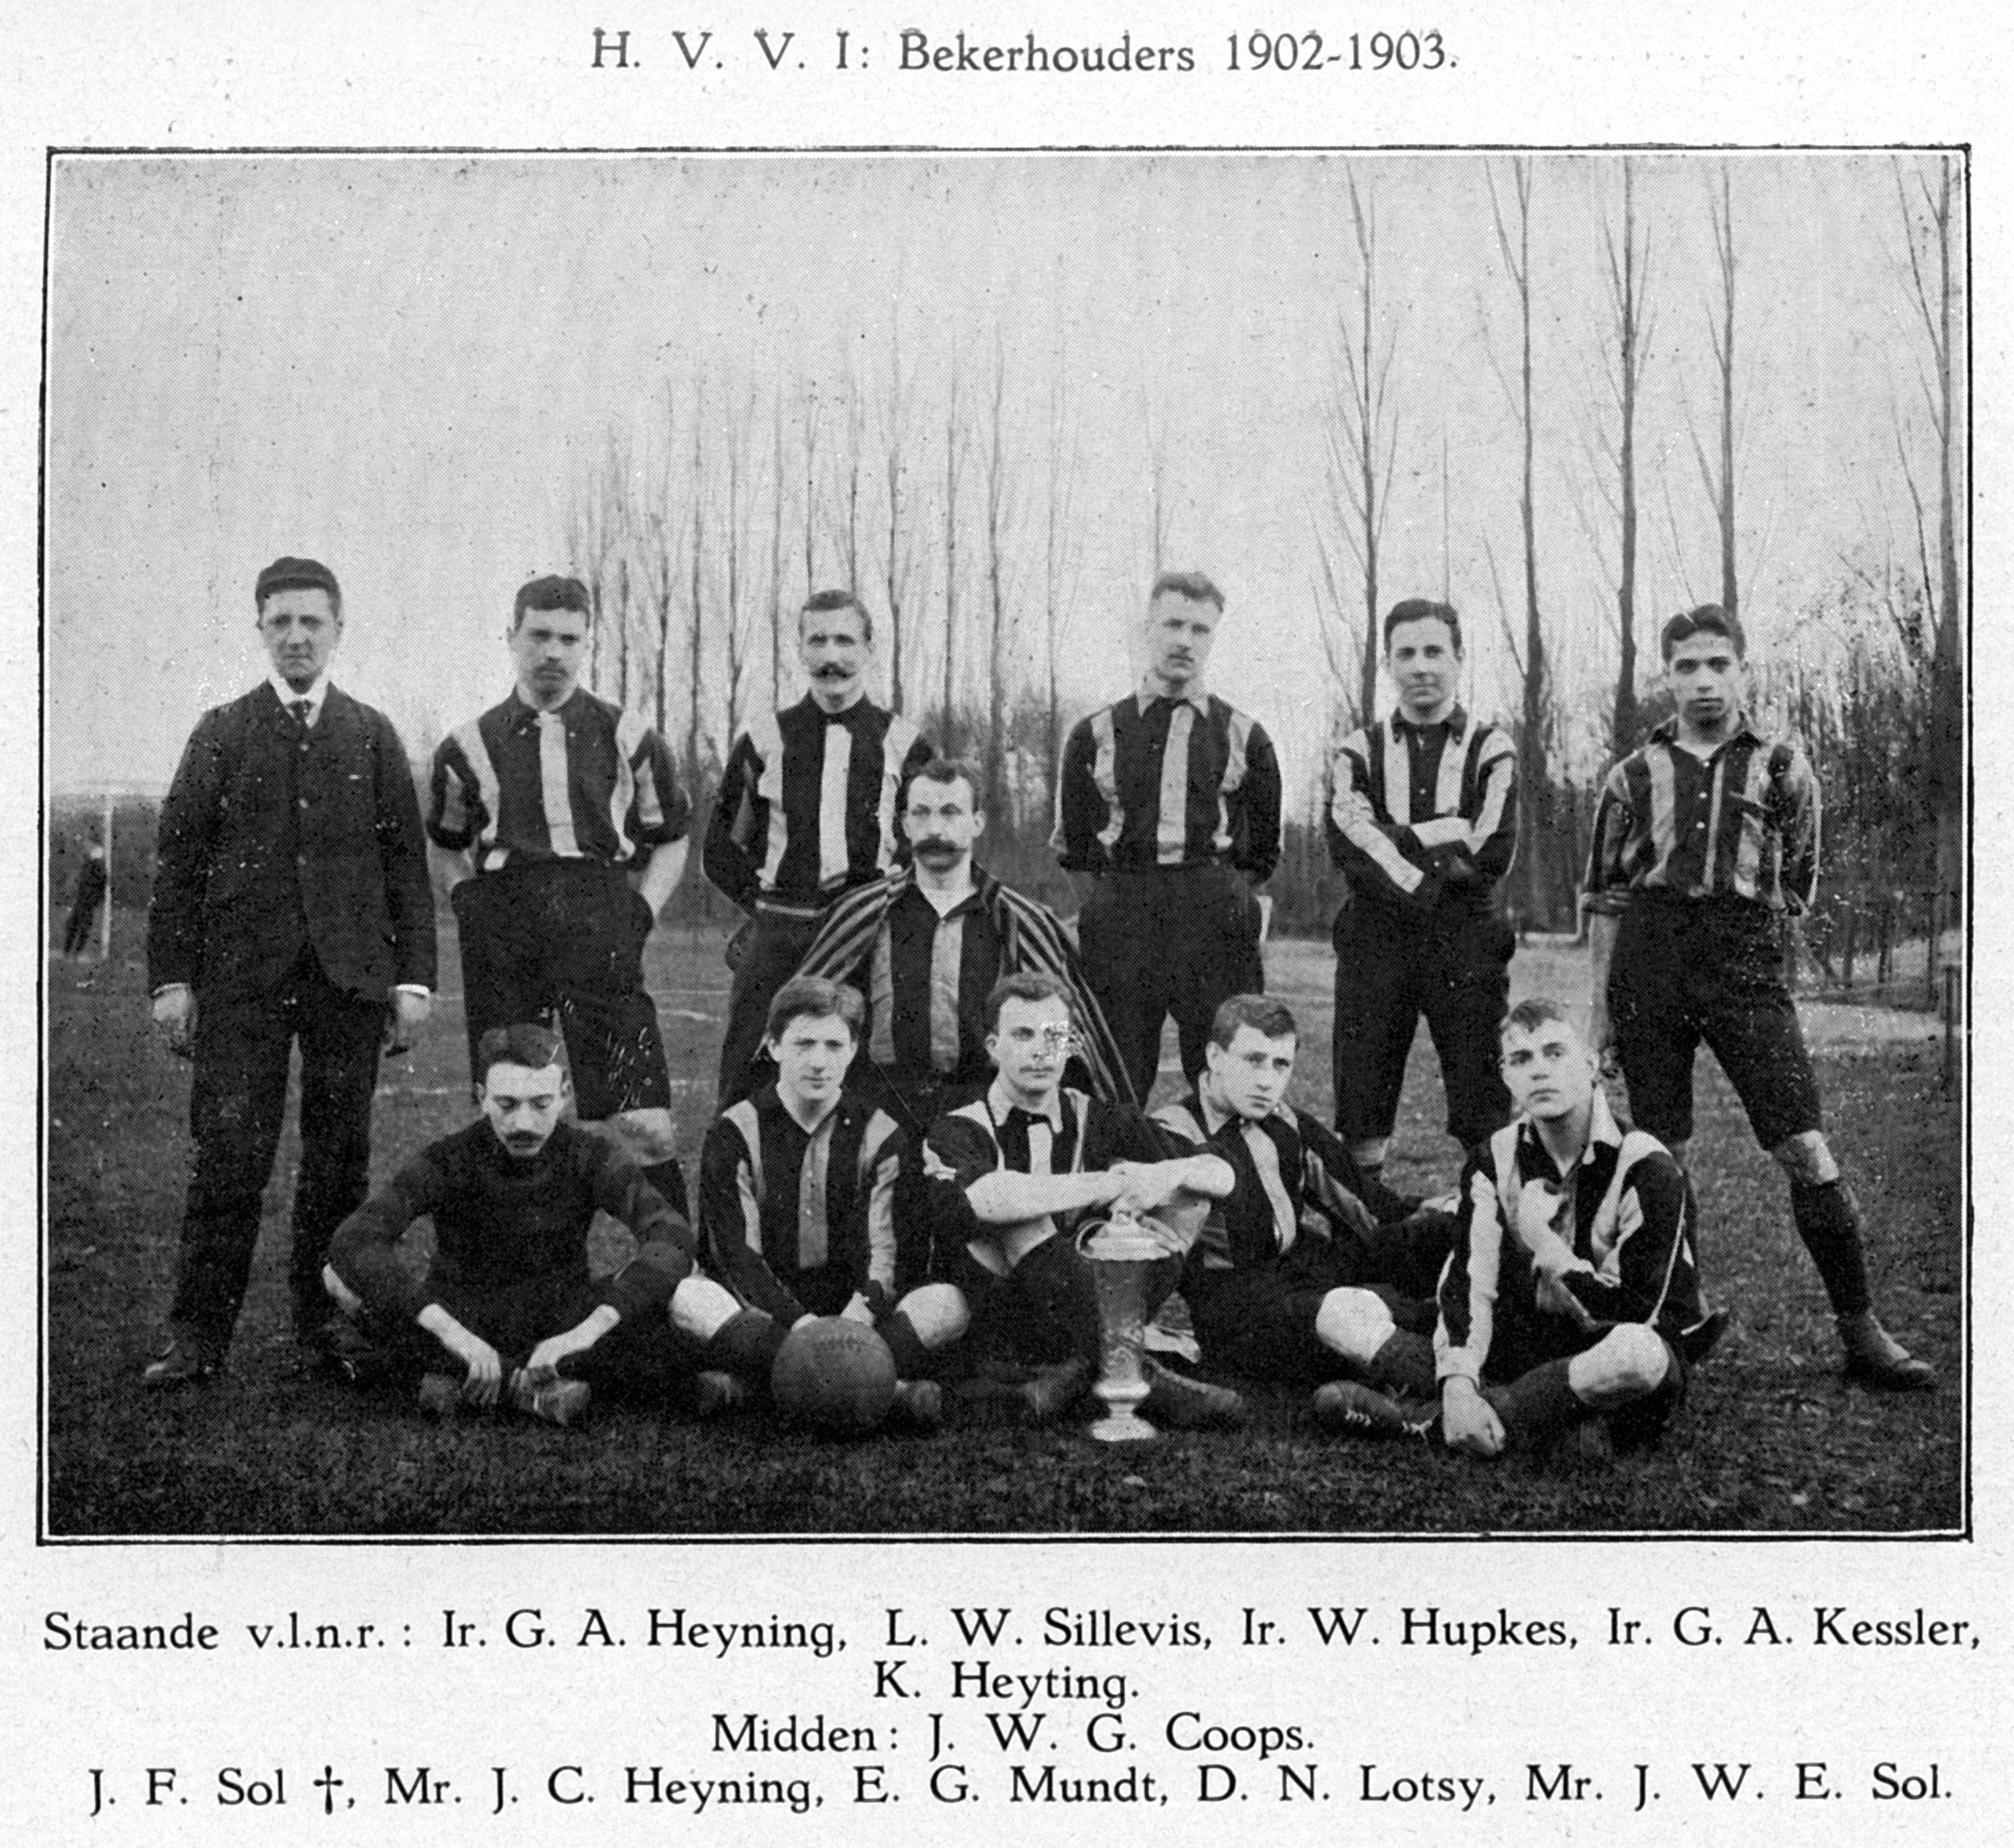 Het HVV-elftal uit 1903, dat HBS met 6-1 versloeg in de bekerfinale.